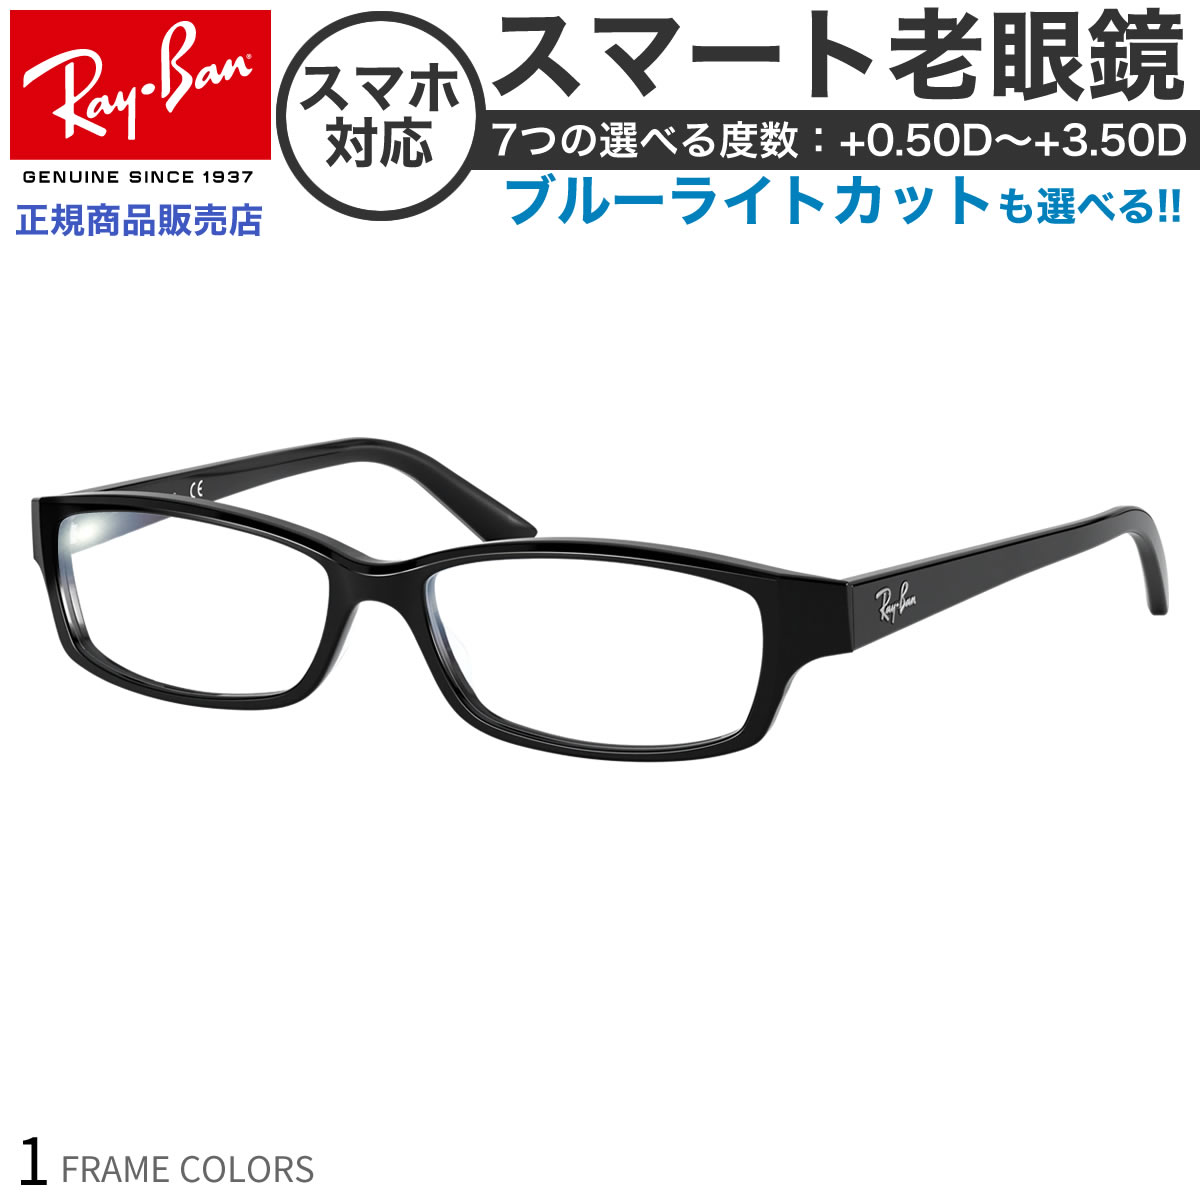 レイバン RX5272 54 サイズ スマート老眼鏡 ブルーライトカット PCメガネ UVカット 紫外線カット Ray-Ban あす楽対応 スマホ老眼 リーディンググラス シニアグラス UV400 [OS]